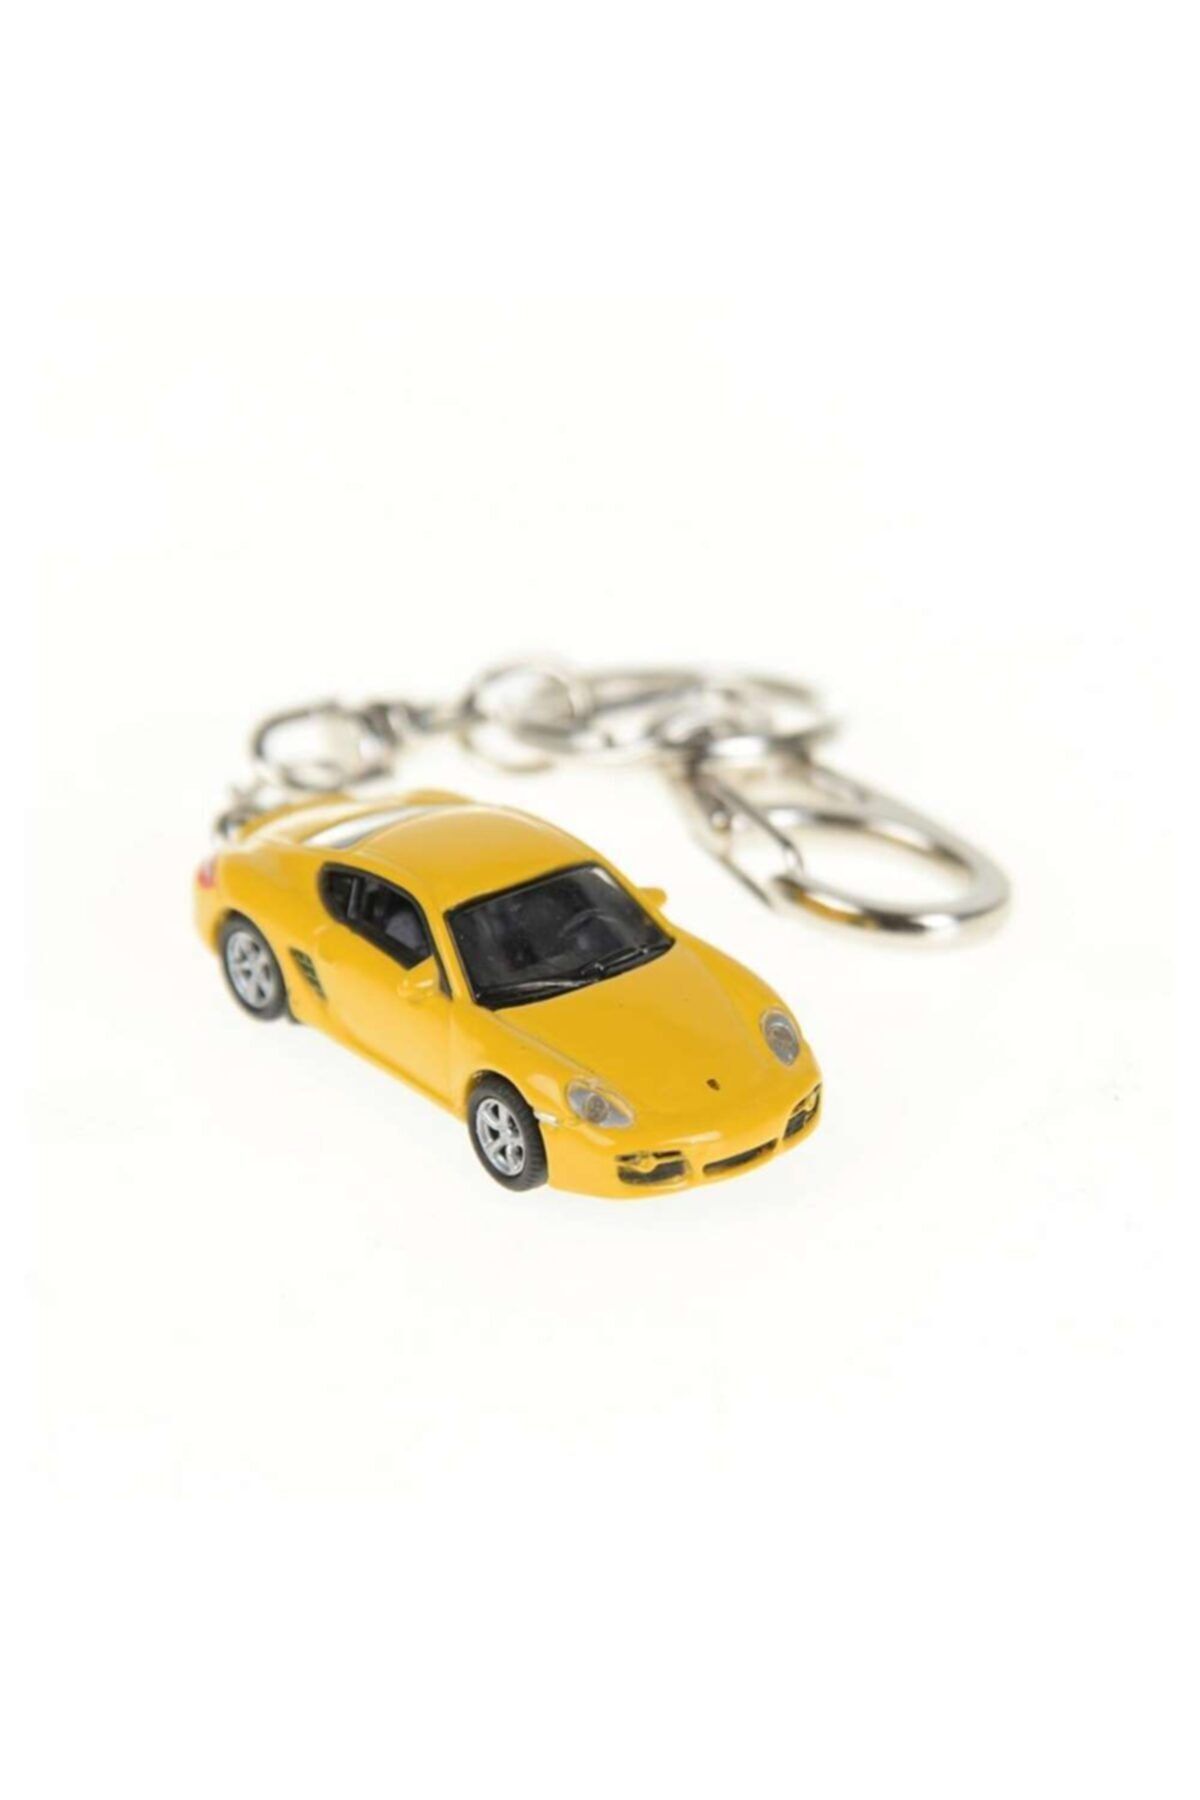 WELLY Metal 1:87 Ölçekli Porsche Anahtarlık Sarı